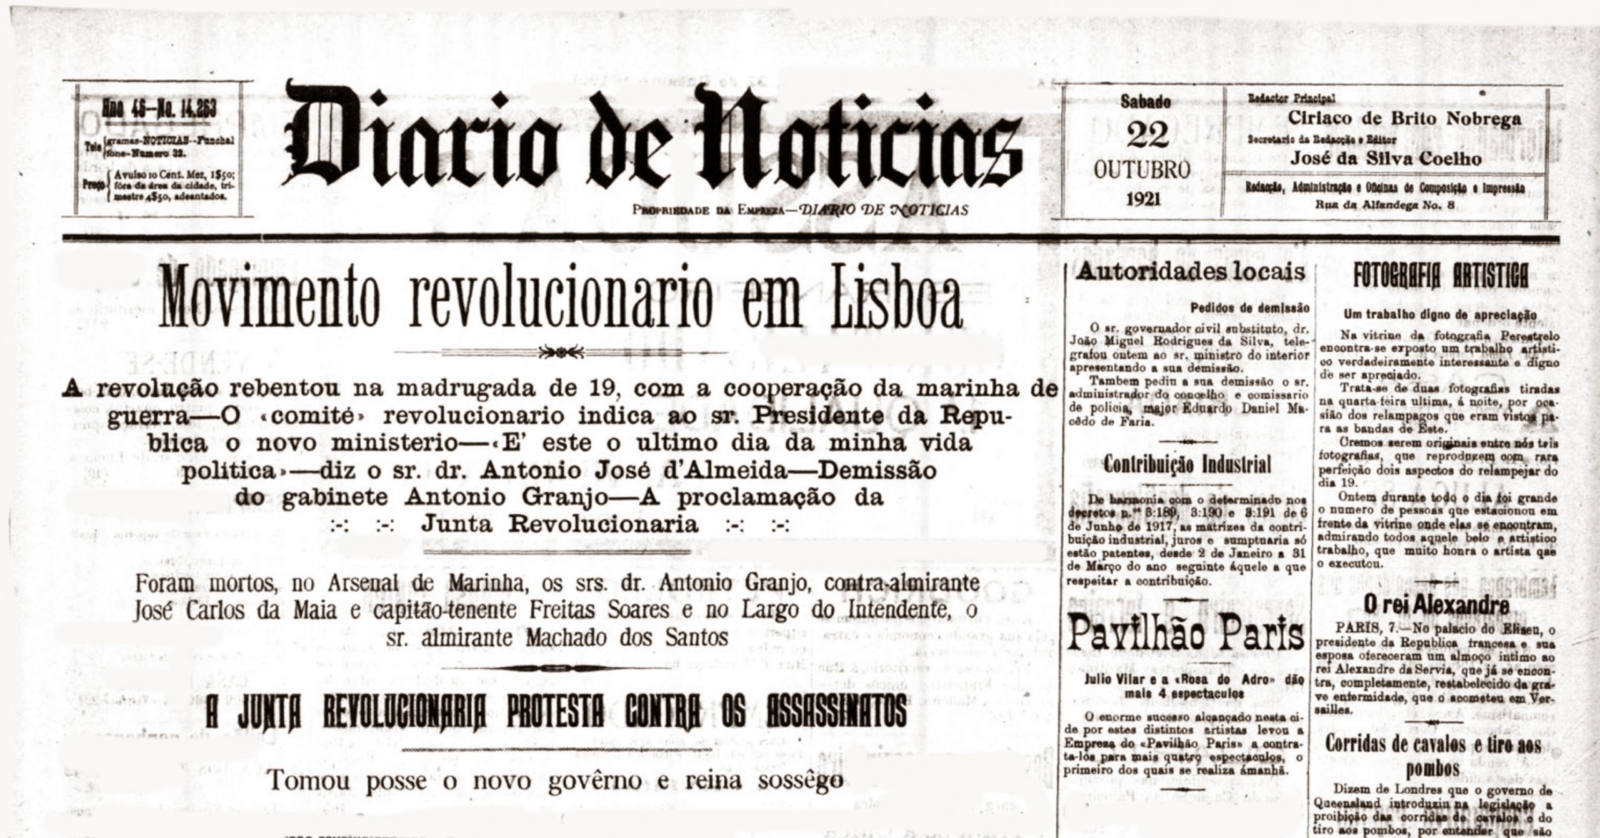 Pormenor da primeira página de um jornal antigo com a notícia de um movimento revolucionário em Lisboa.